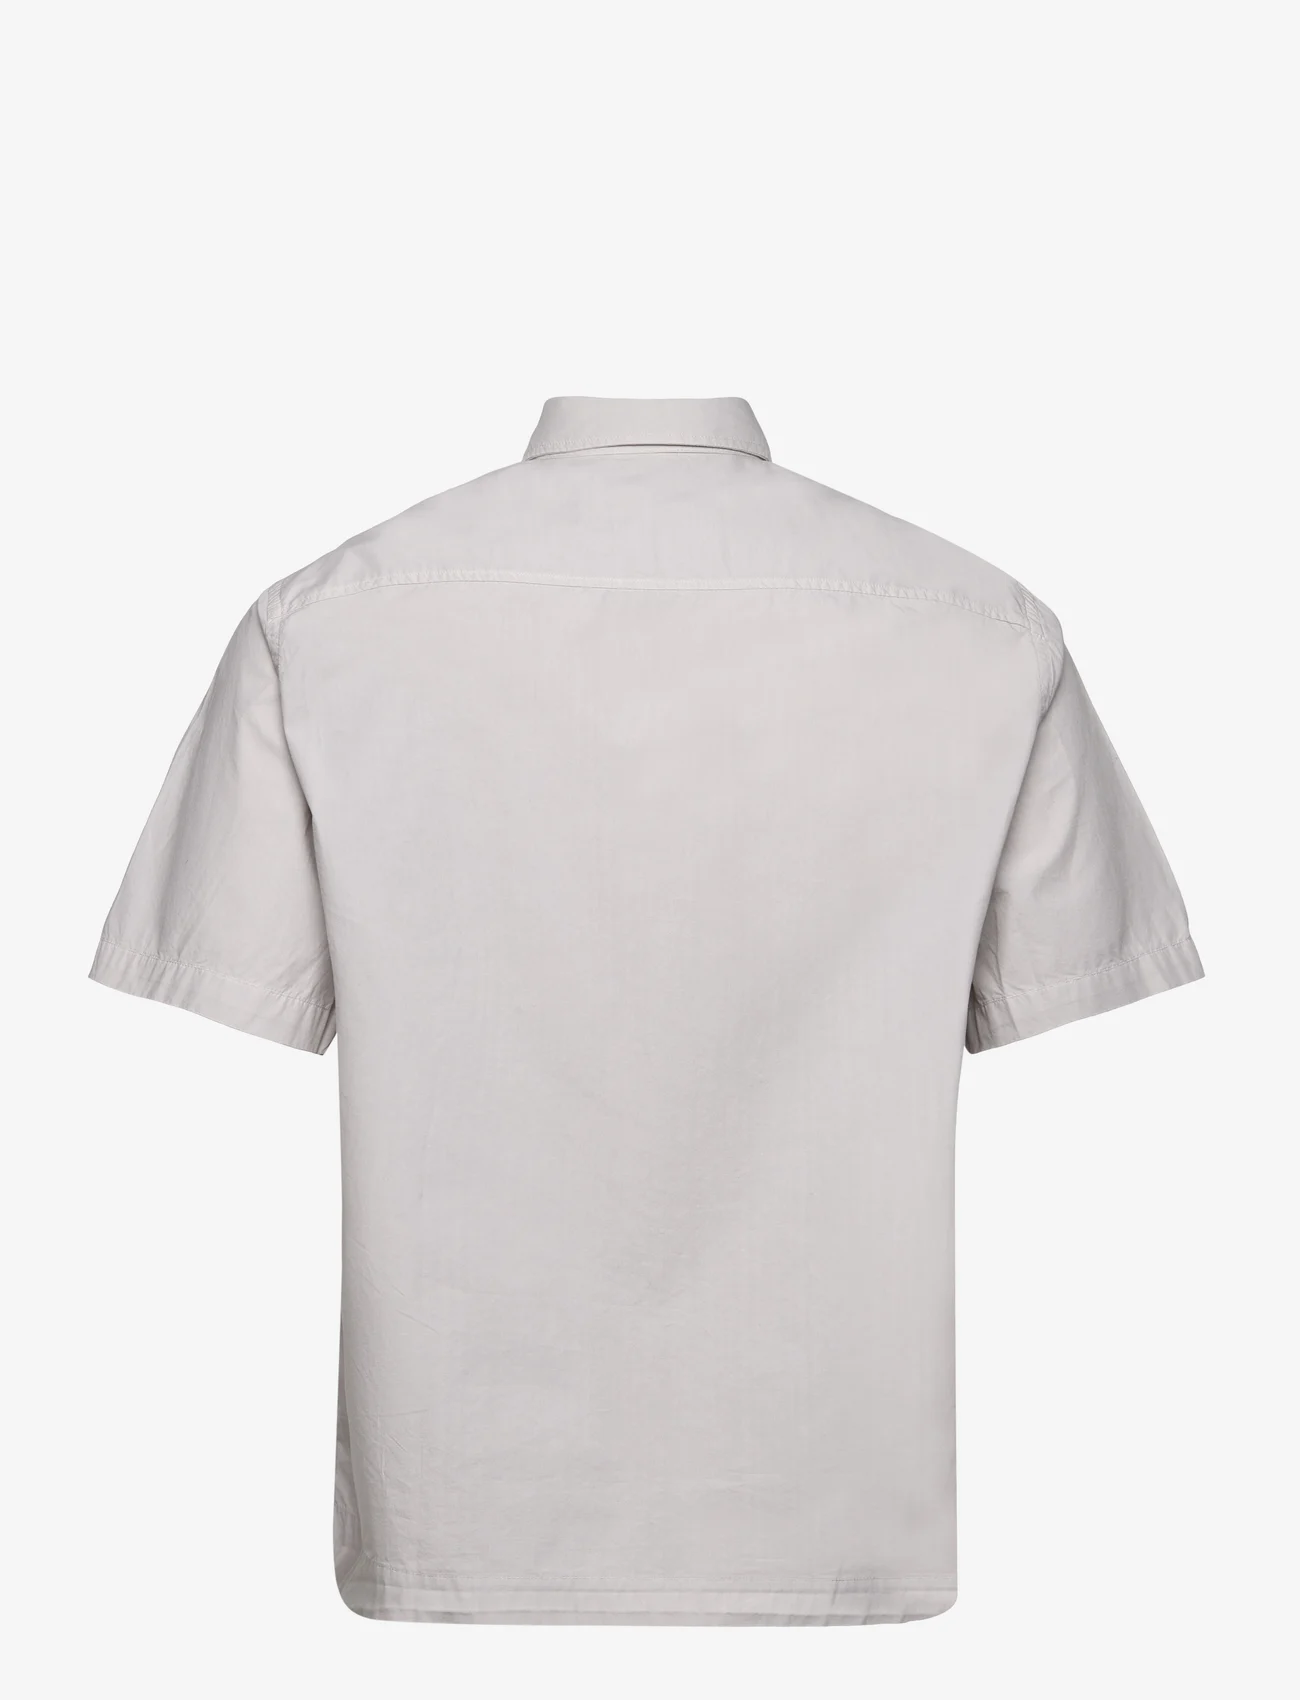 Garment Project - Short Sleeved Shirt - Bone White - kortermede skjorter - bone white - 1